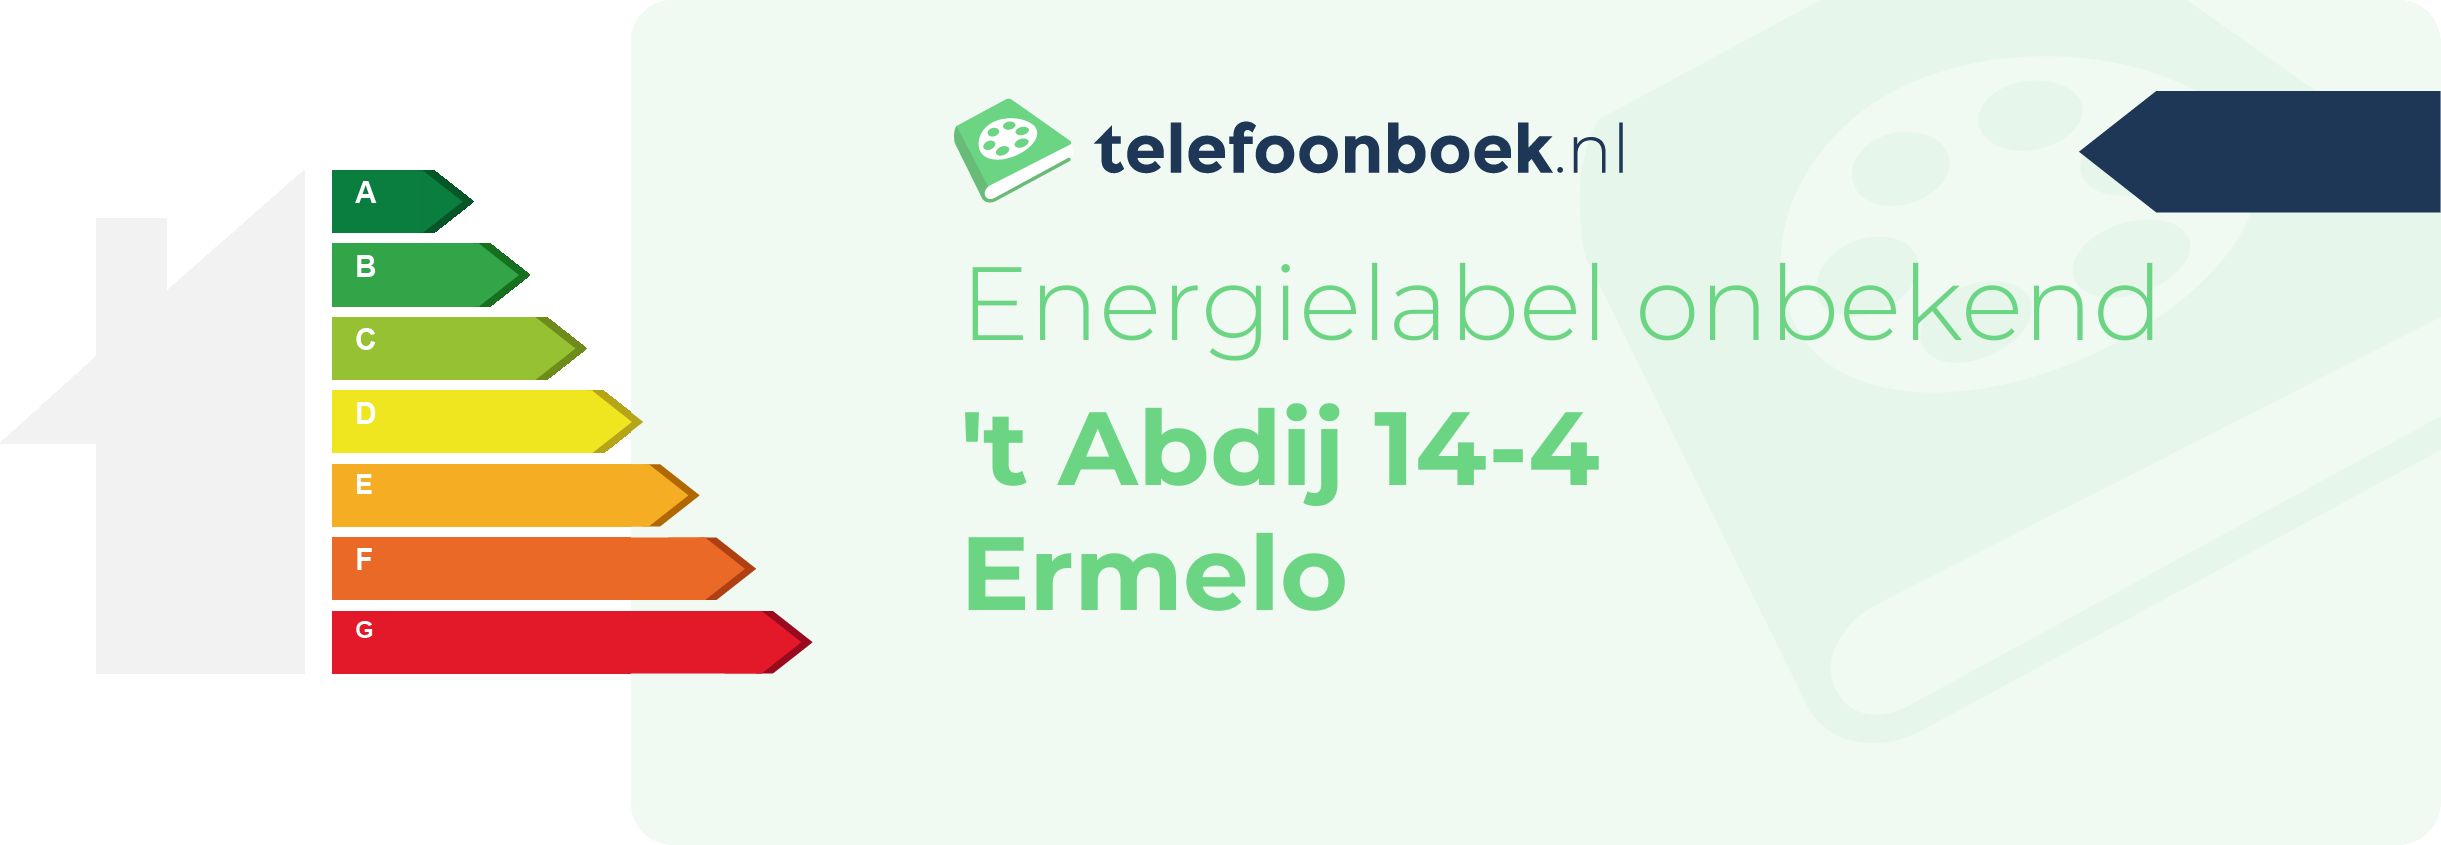 Energielabel 't Abdij 14-4 Ermelo